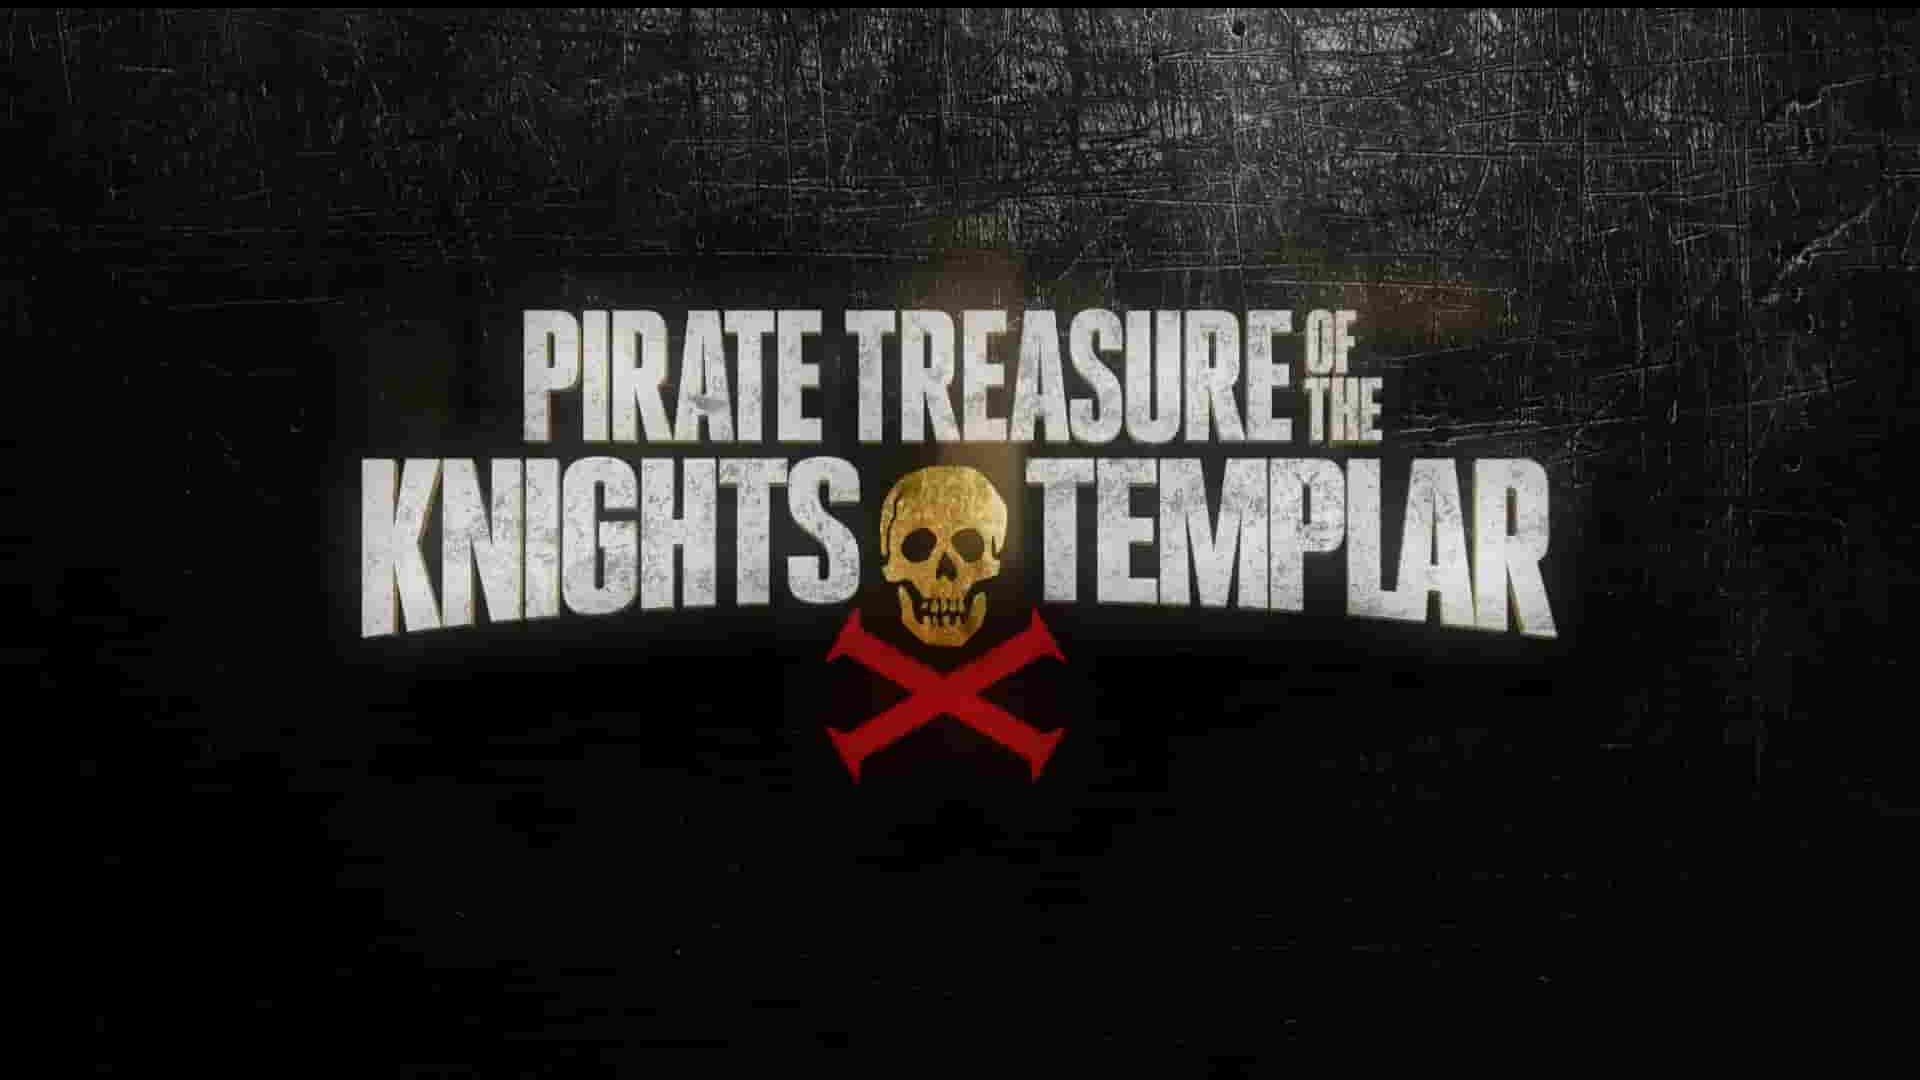 历史频道《圣殿骑士团的海盗宝藏 Pirate Treasure of the Knights Templar 2015》第1季全6集 英语中英双字 1080P高清网盘下载